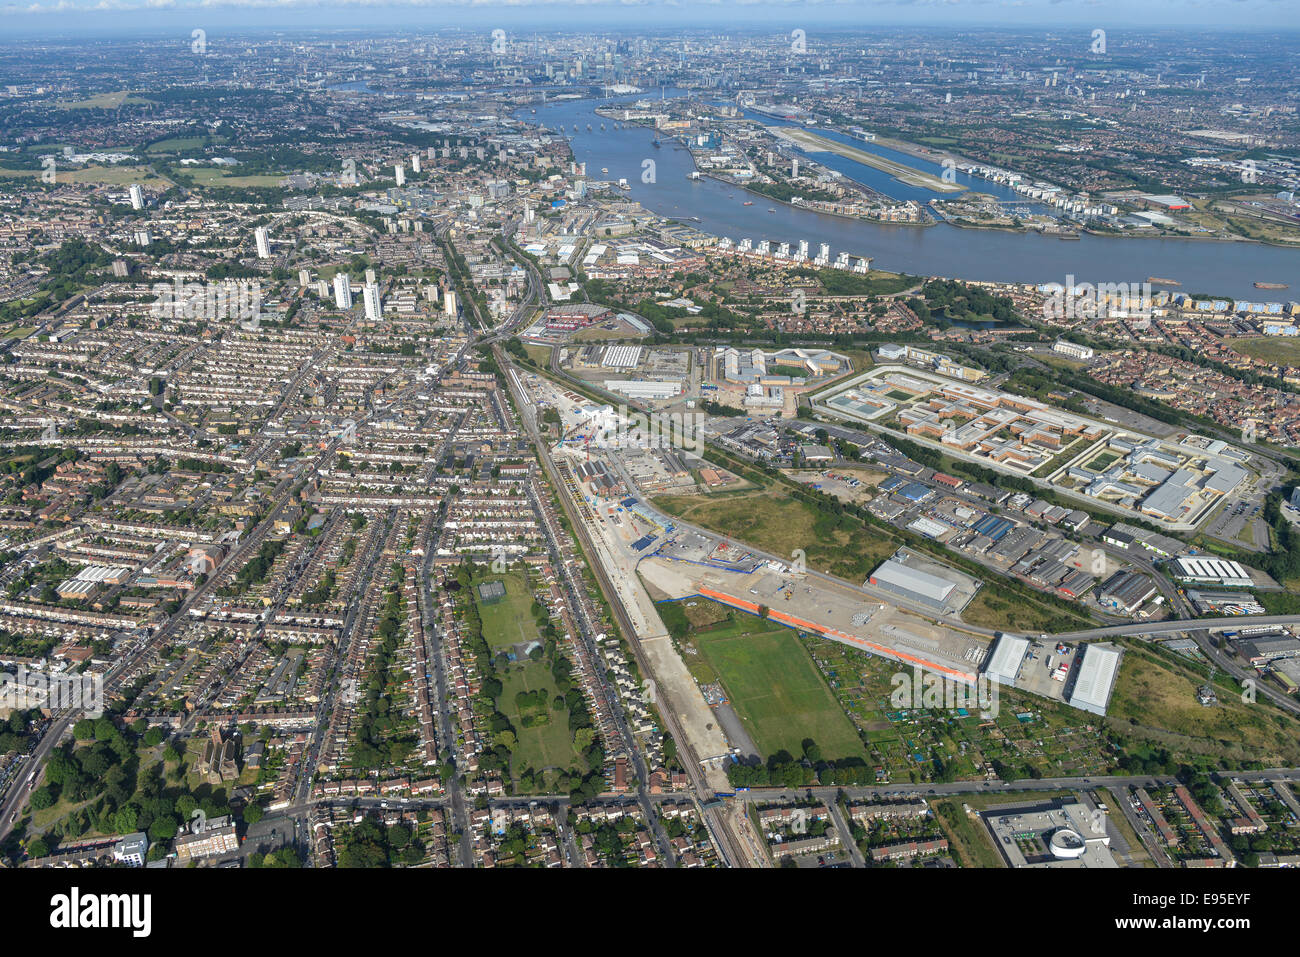 Una vista aérea de la zona de Londres Plumstead mirando hacia la ciudad. Belmarsh Prisión y London City Airport visible Foto de stock